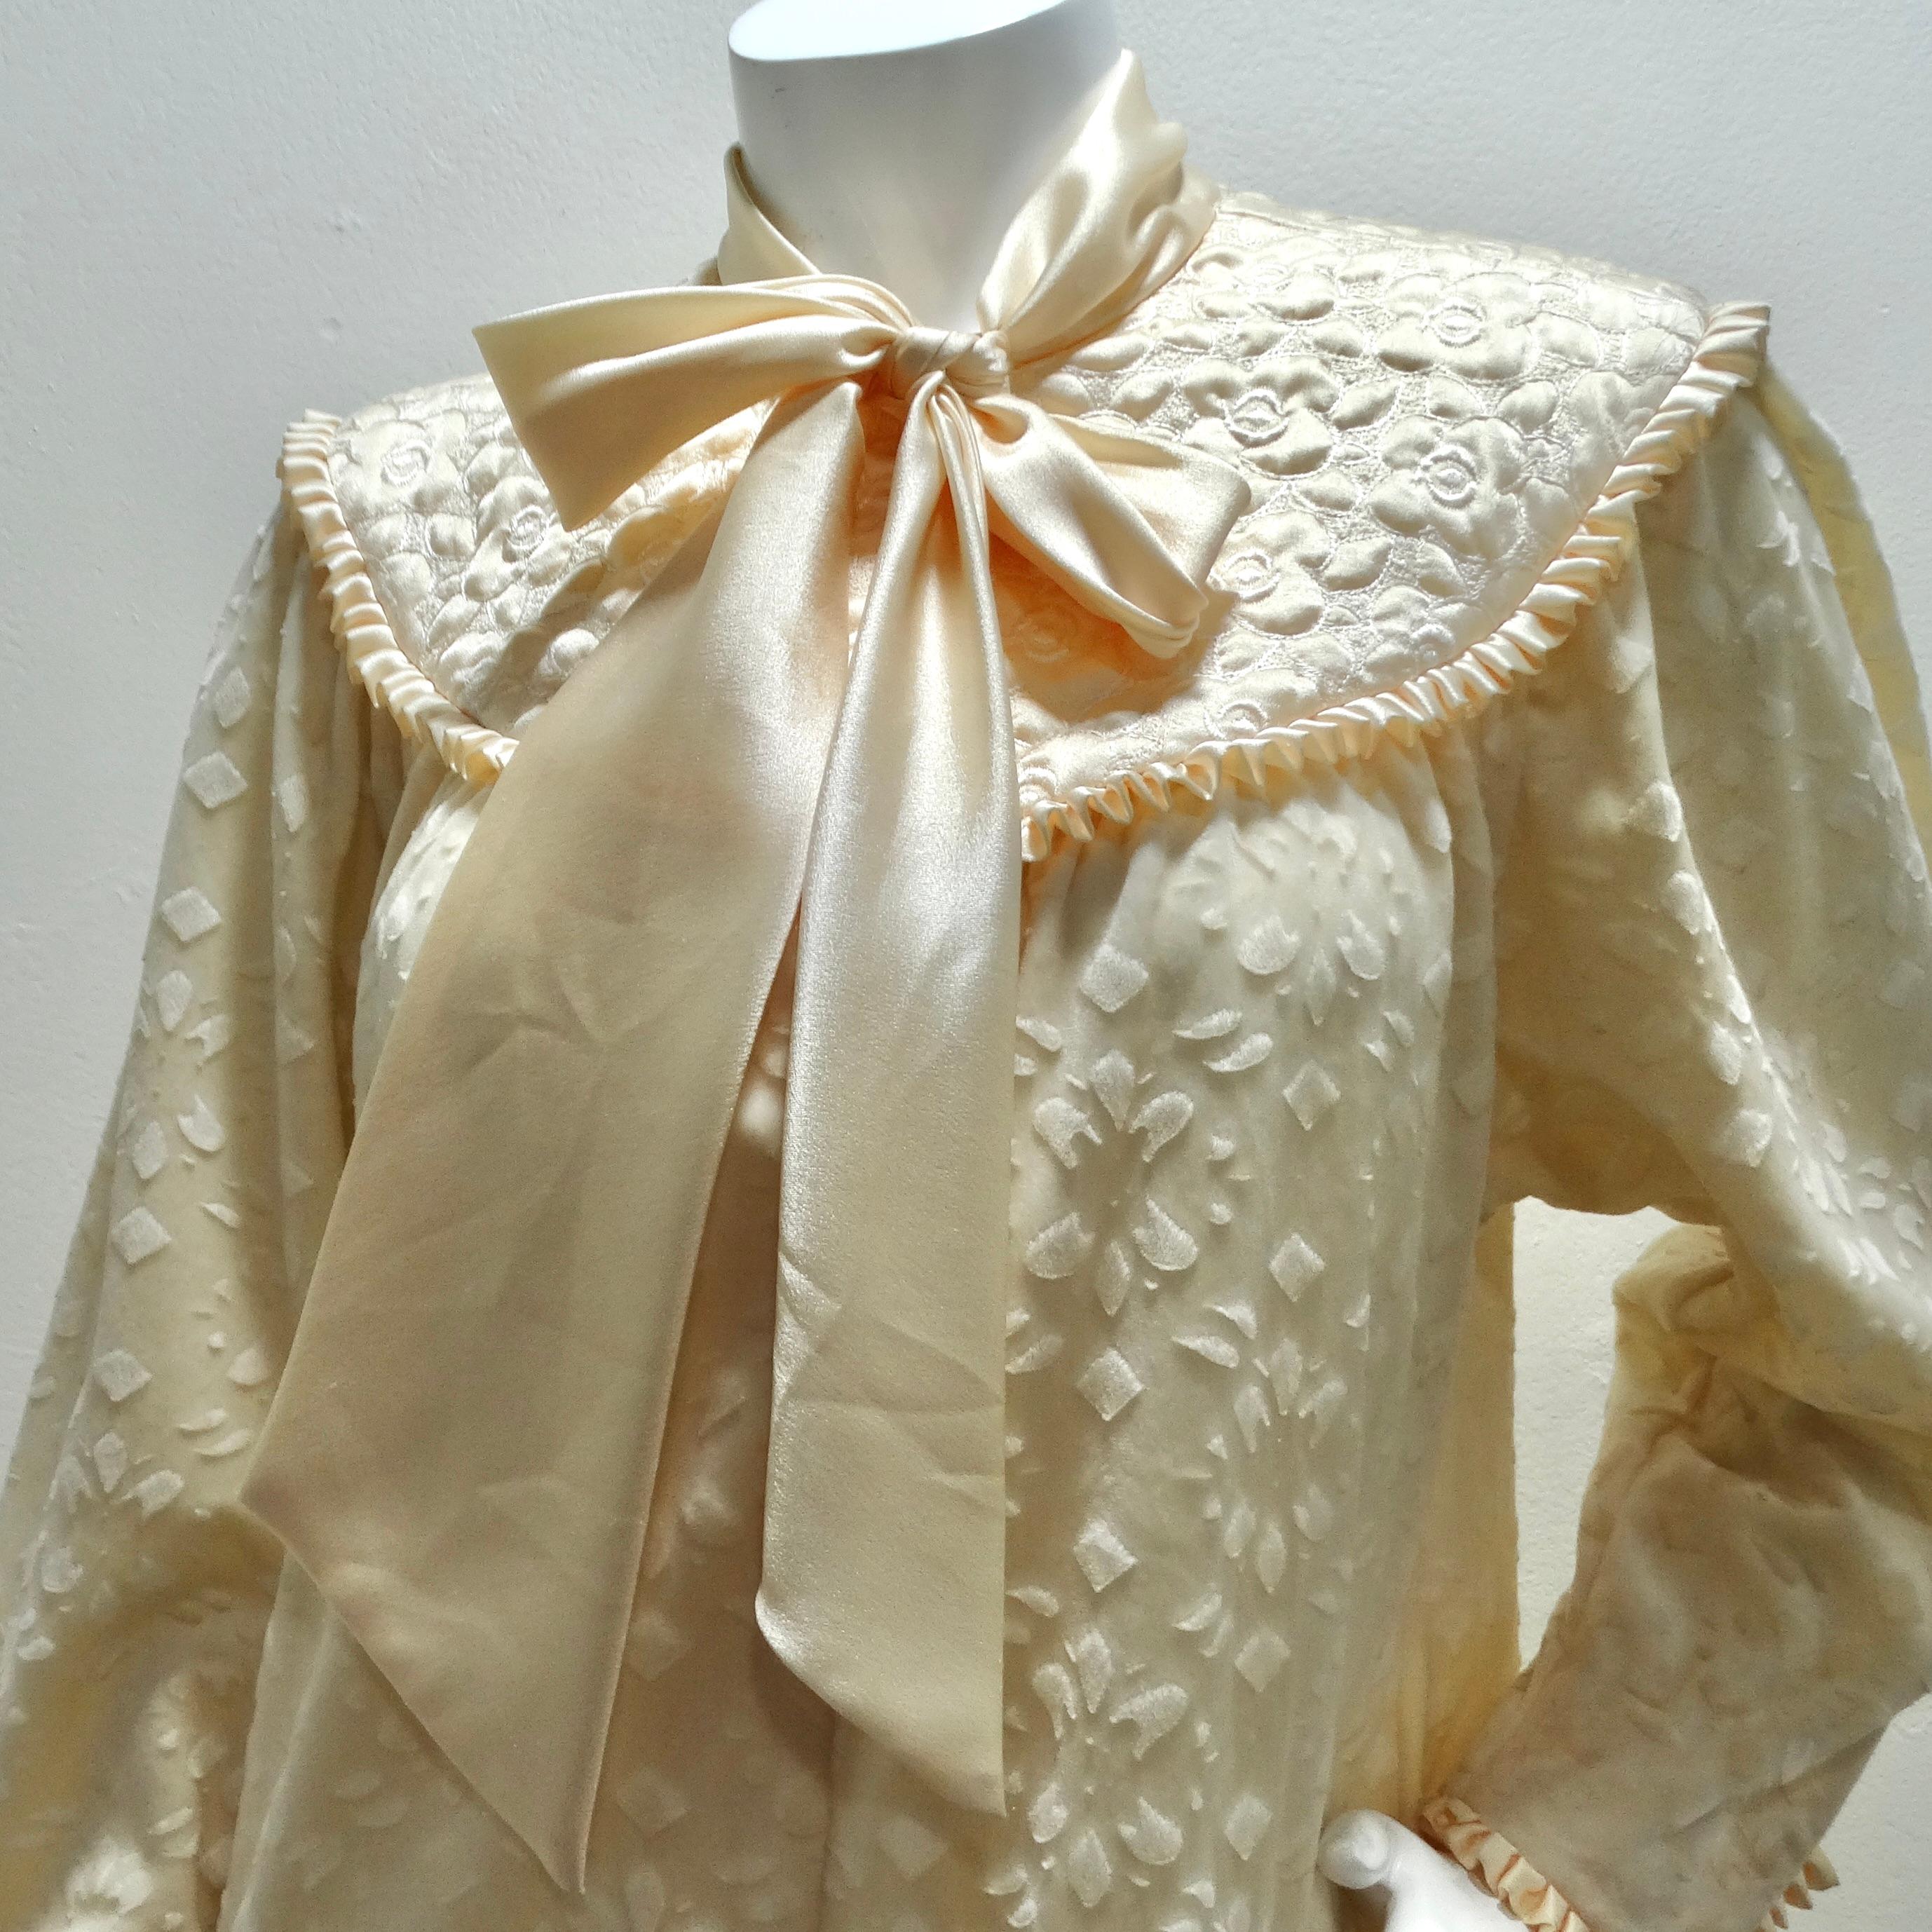 La robe longue en velours ivoire Christian Dior des années 1960 semble être une pièce exquise et intemporelle, parfaite pour ajouter une touche de luxe et d'élégance à n'importe quelle garde-robe.

La teinte ivoire blanc cassé de la robe dégage un